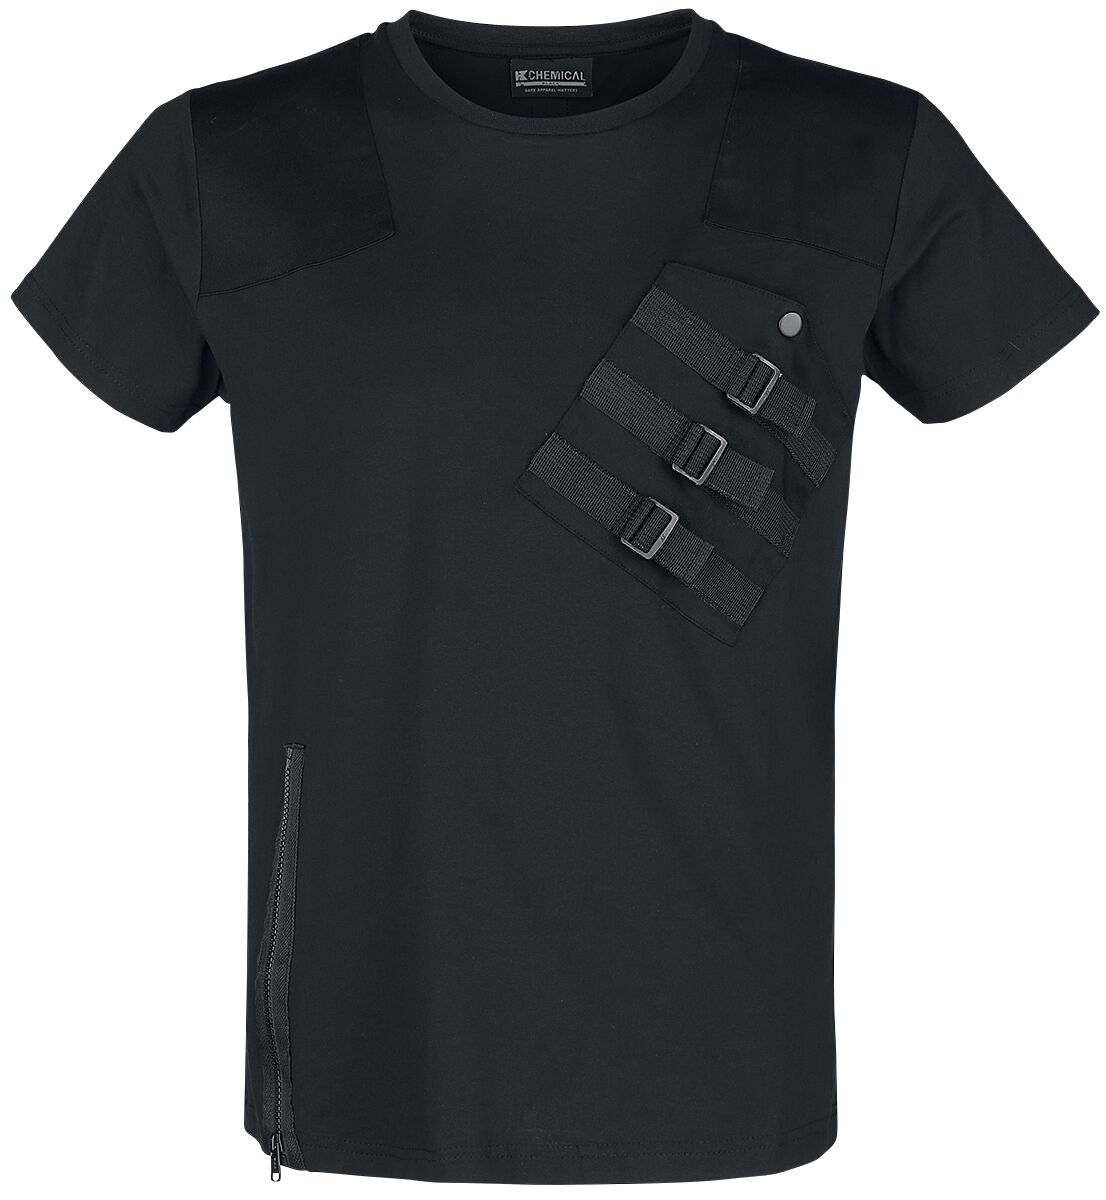 Chemical Black - Gothic T-Shirt - Cadet Top - S bis 3XL - für Männer - Größe M - schwarz